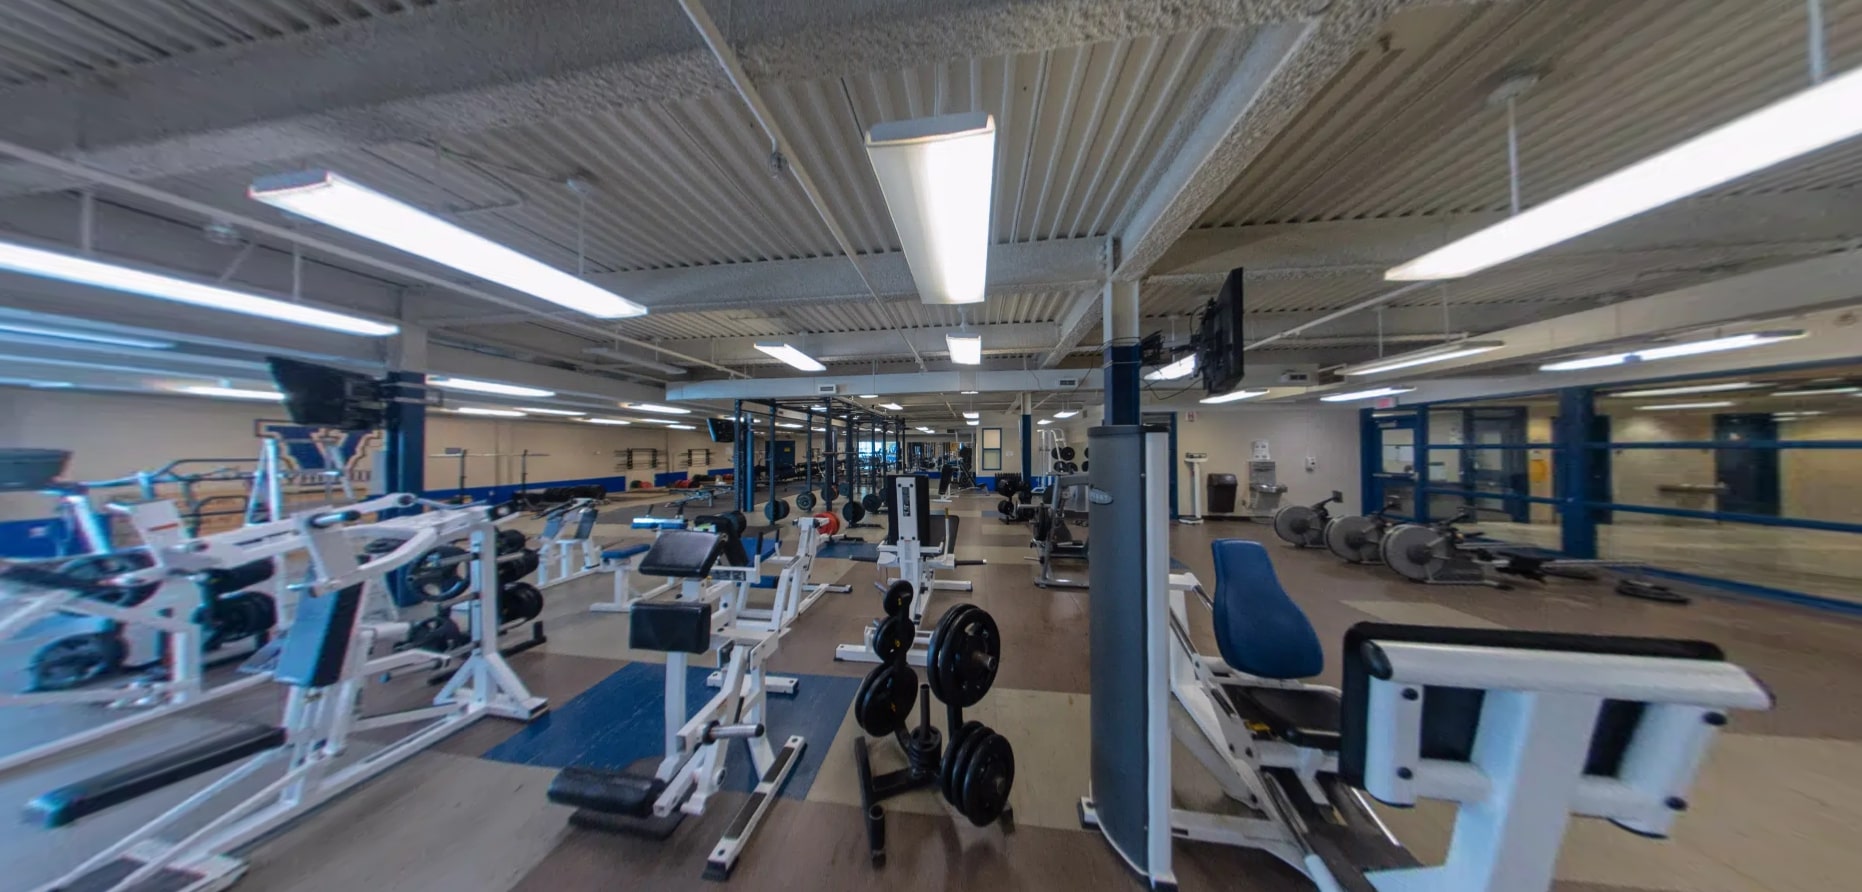 Phòng tập gym tối tân thỏa mãn nhu cầu rèn luyện thể chất cho sinh viên